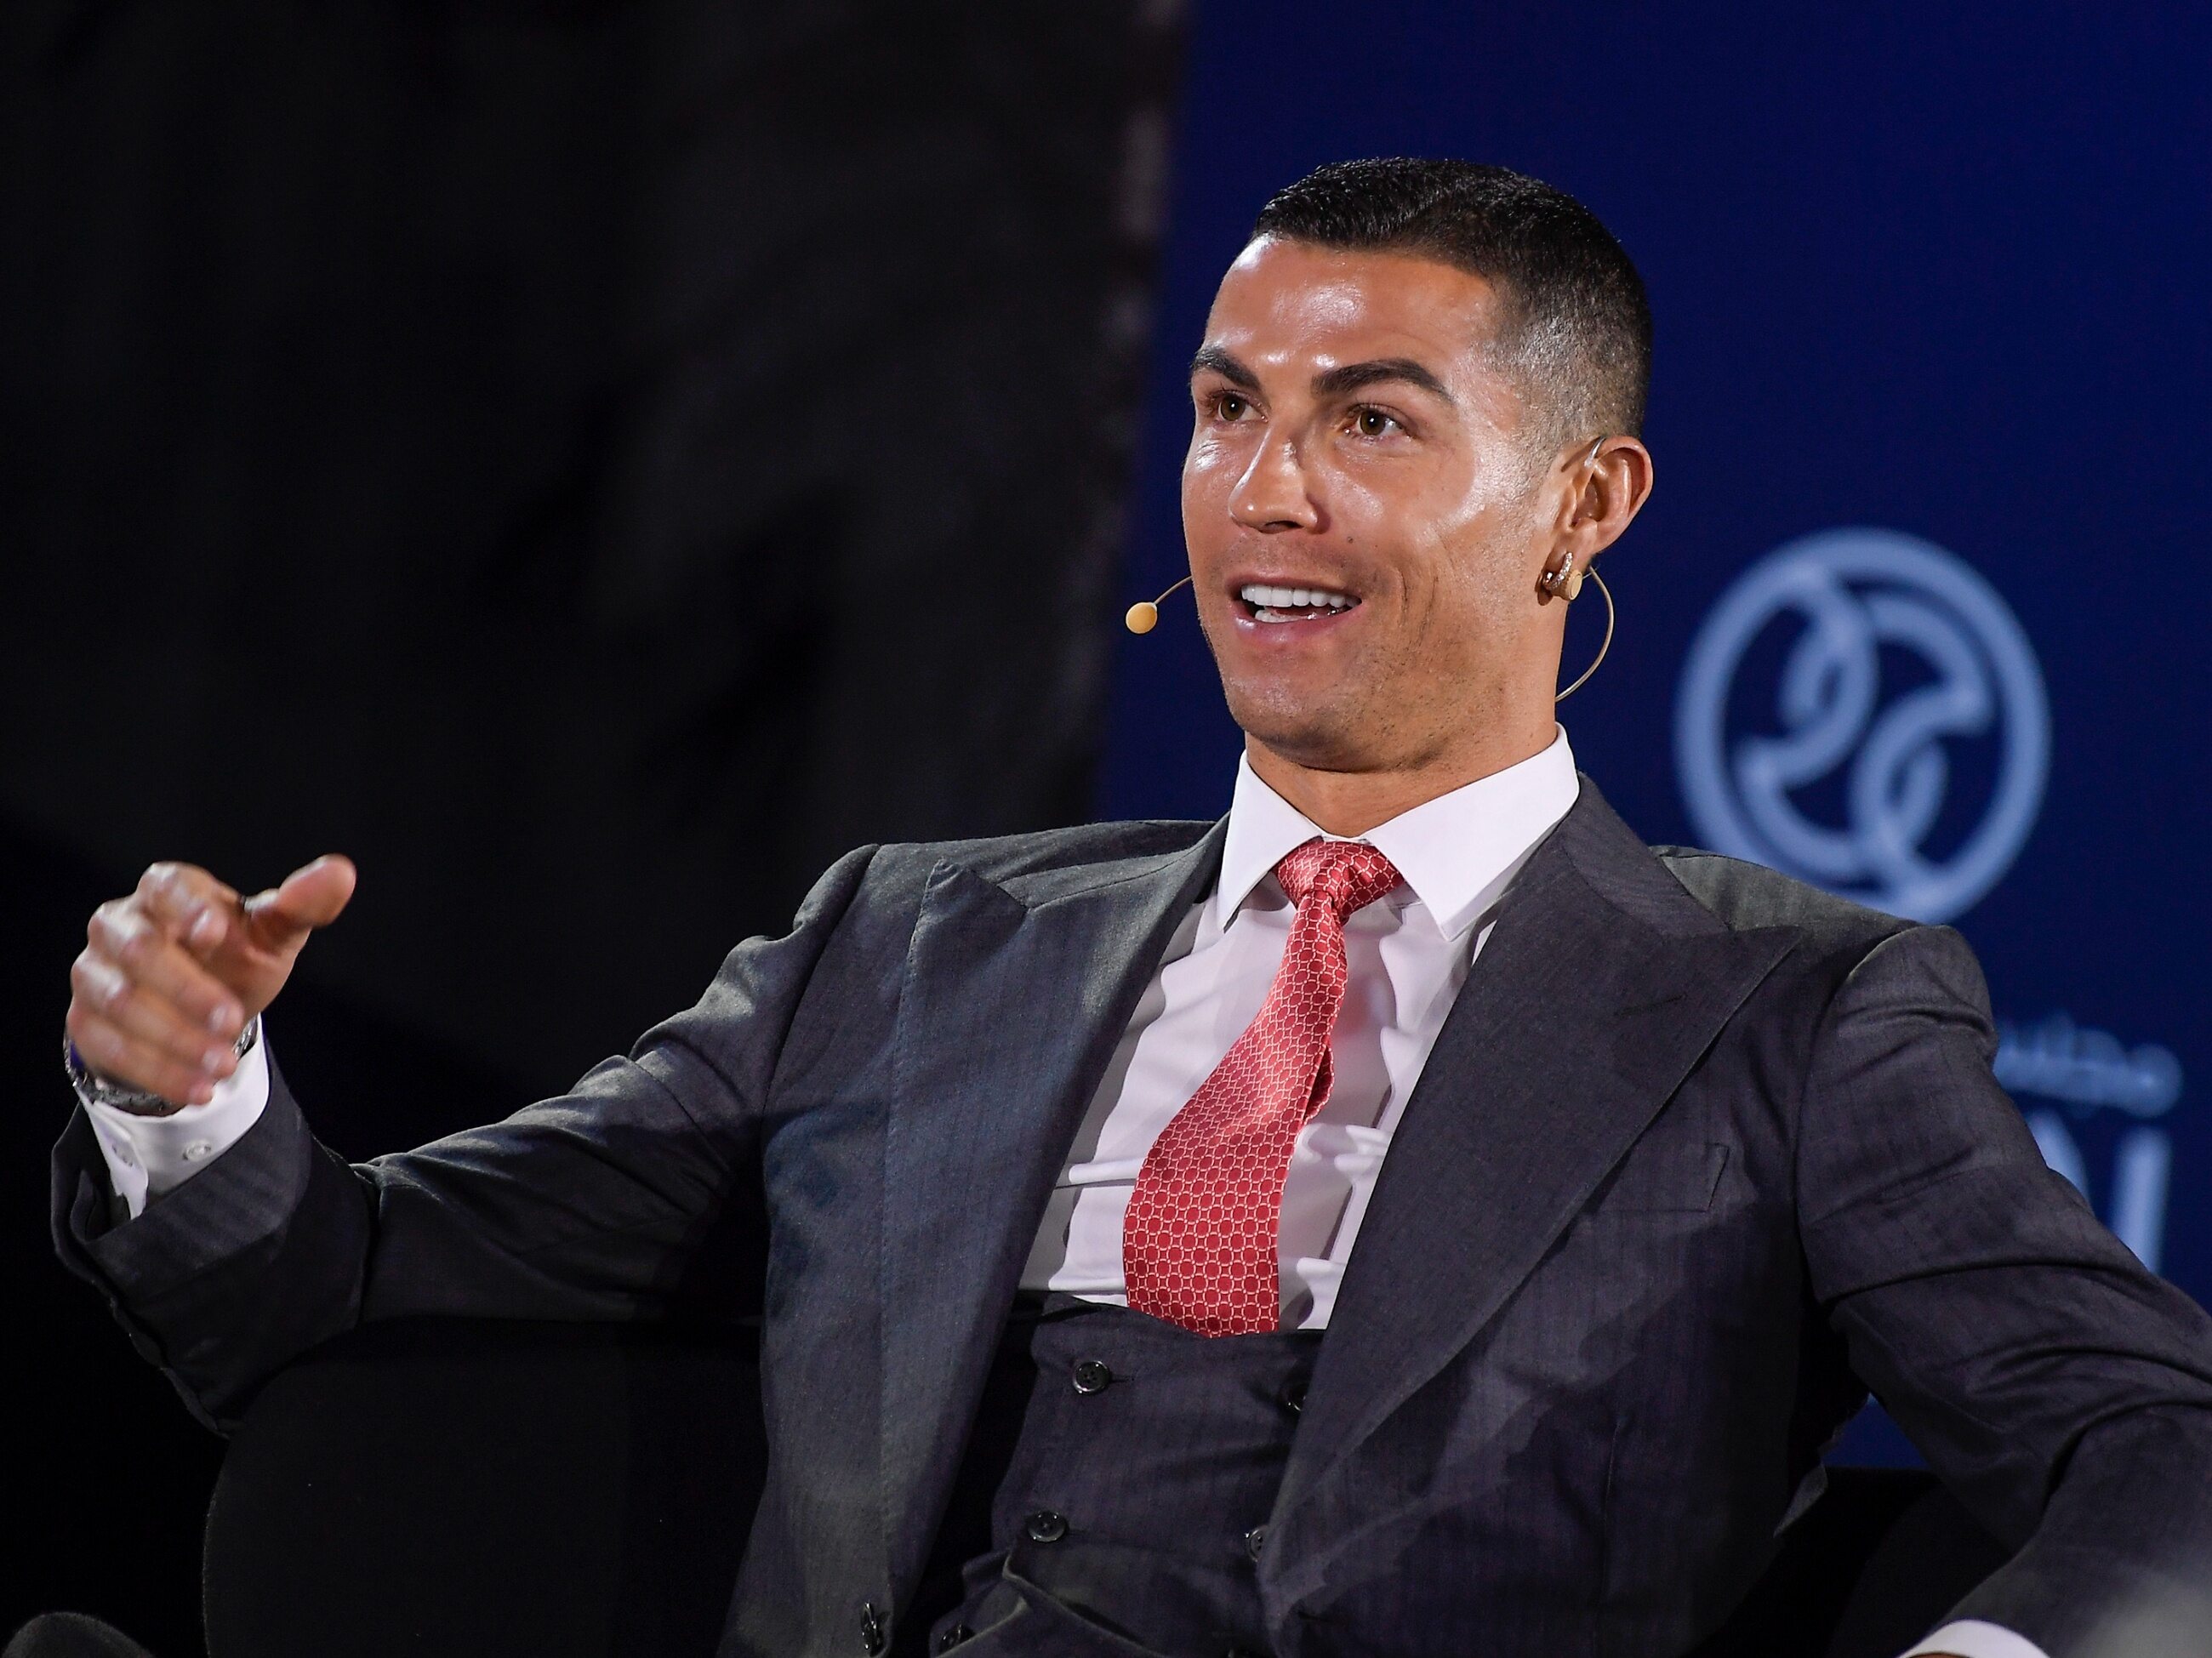 La historia de fichajes terminó con Cristiano Ronaldo.  Medios españoles informan dónde jugará – Premier League inglesa – Sport Wprost